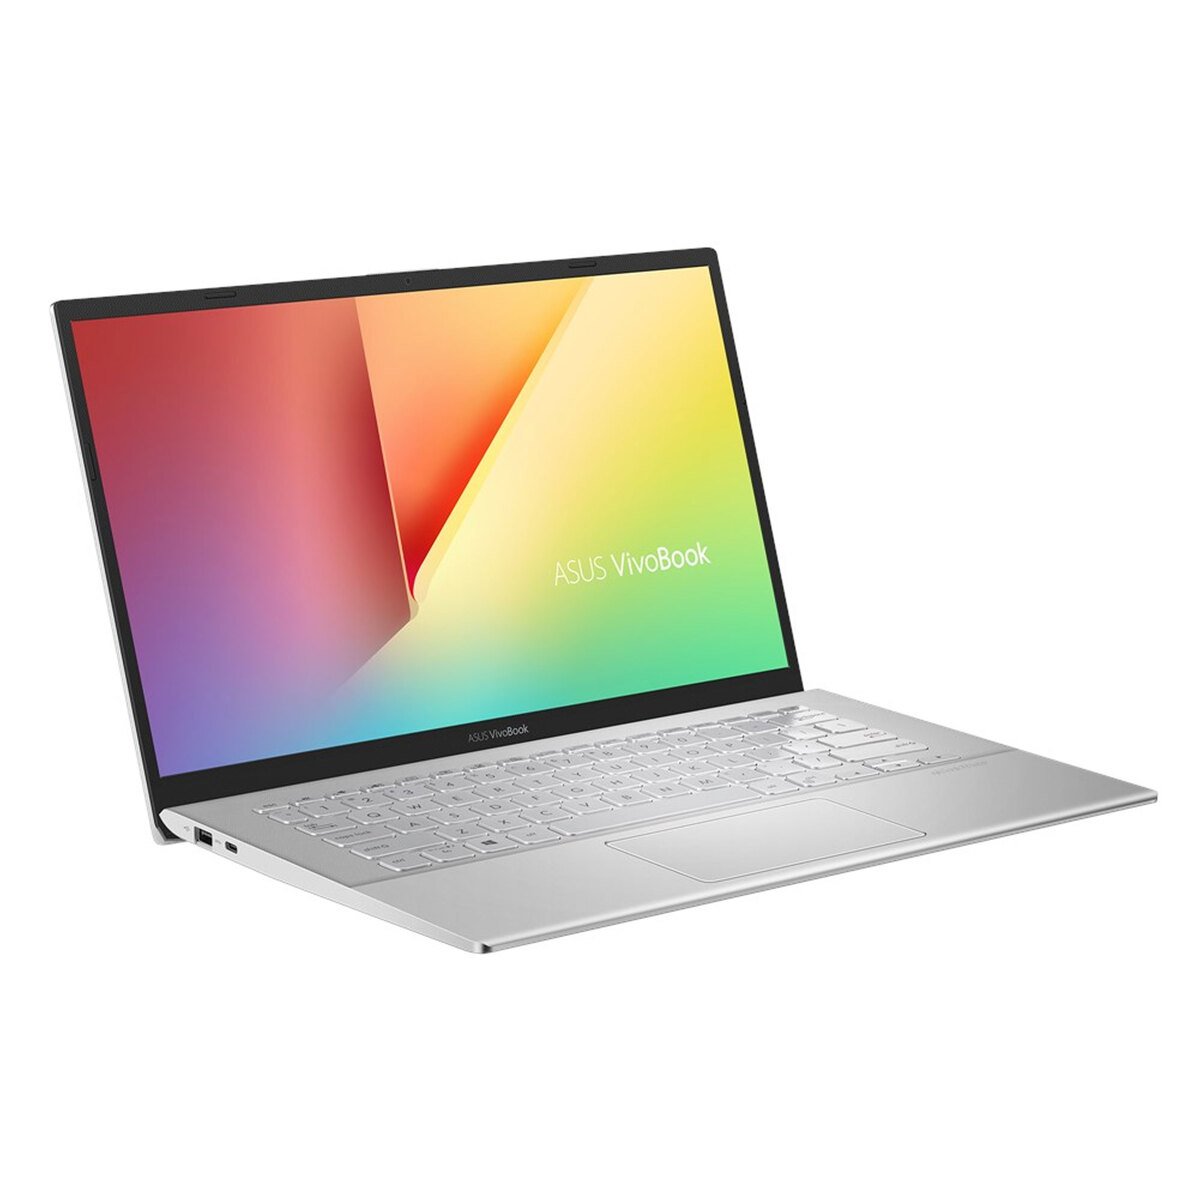 Asus Notebook A420FA-EB242T(i5-10210U,8GB RAM,512GB SSD,Intel HD,14"FHD,Windows 10)